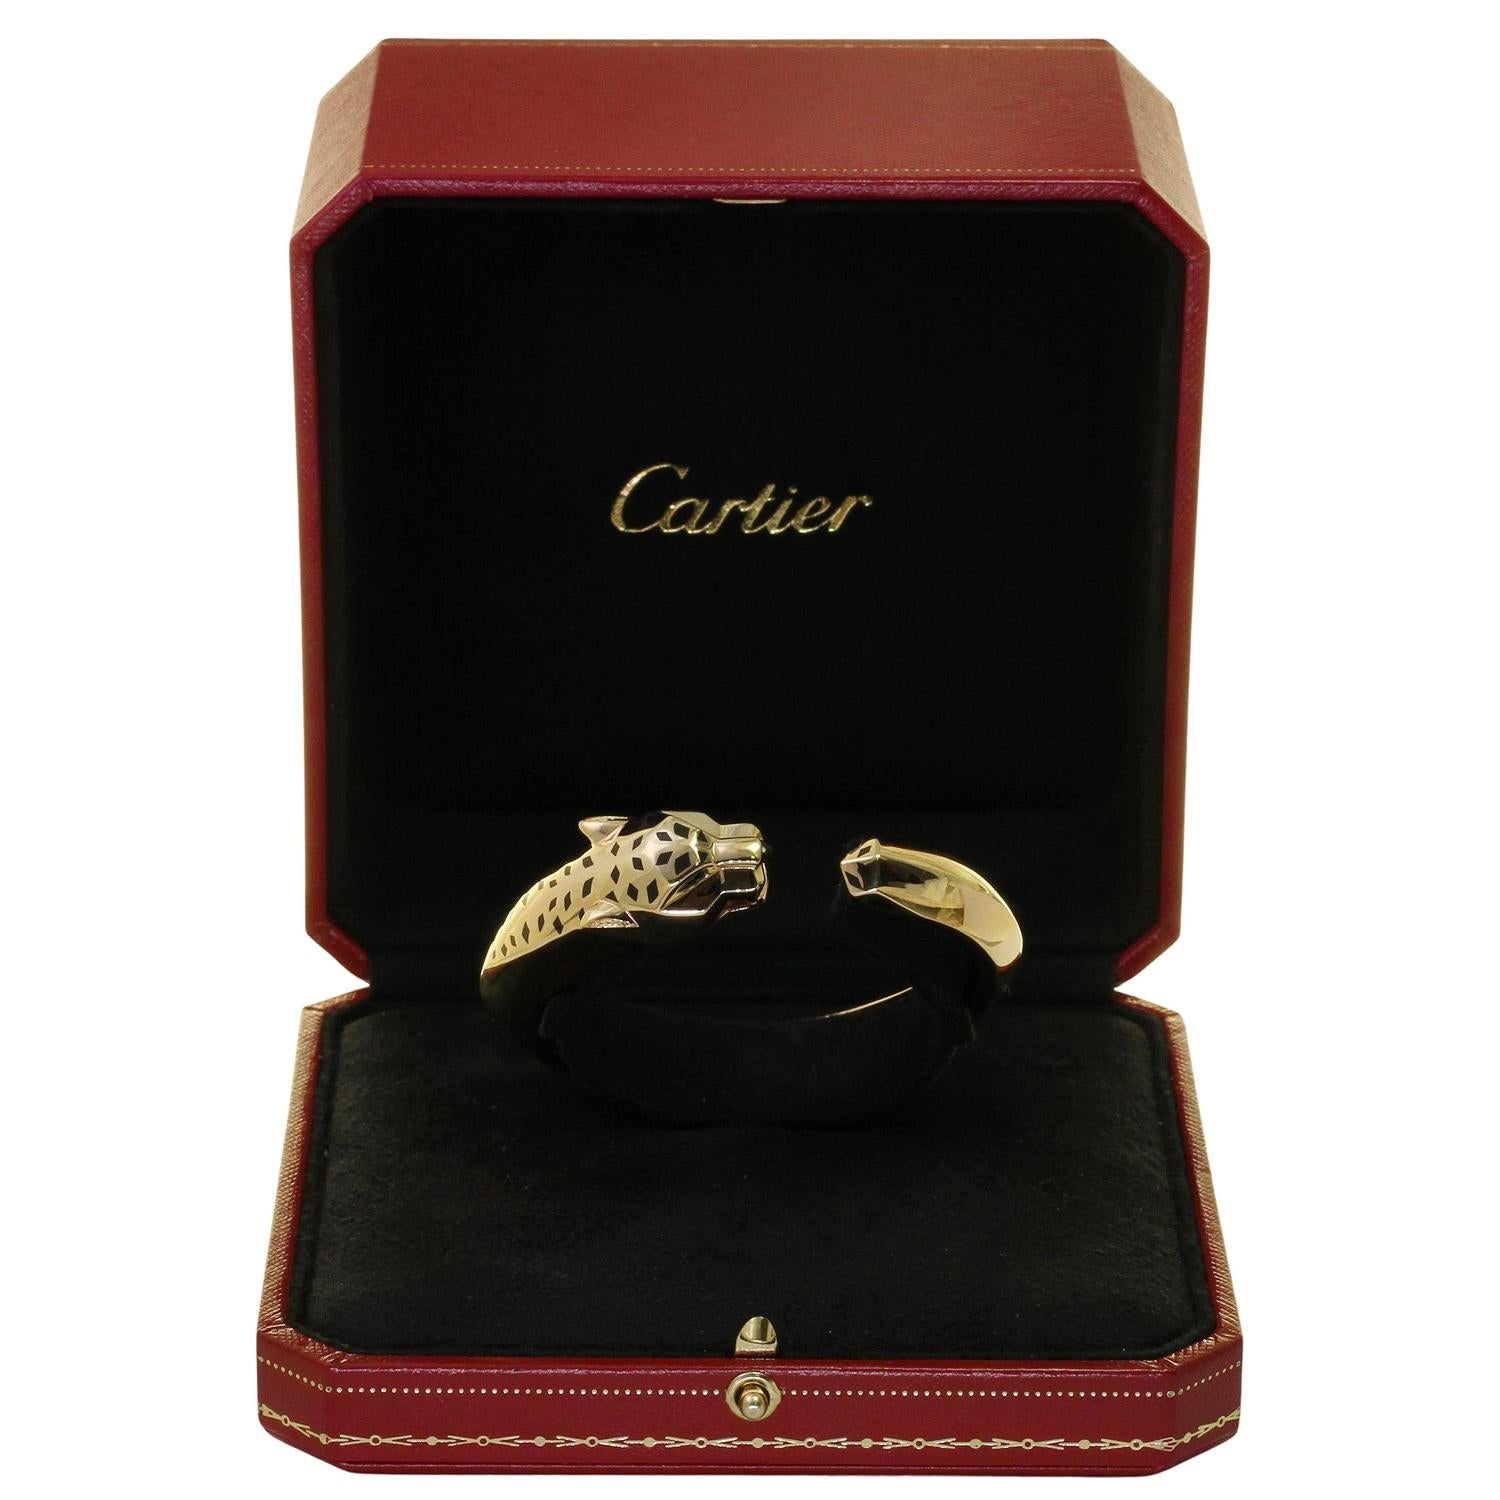 Ce fabuleux bracelet Panthère de Cartier présente le design iconique de la panthère en or jaune 18 carats, rehaussé d'yeux en grenat tsavorite vert, d'un nez en onyx noir et de taches en laque noire. Fabriqué en France dans les années 2010.